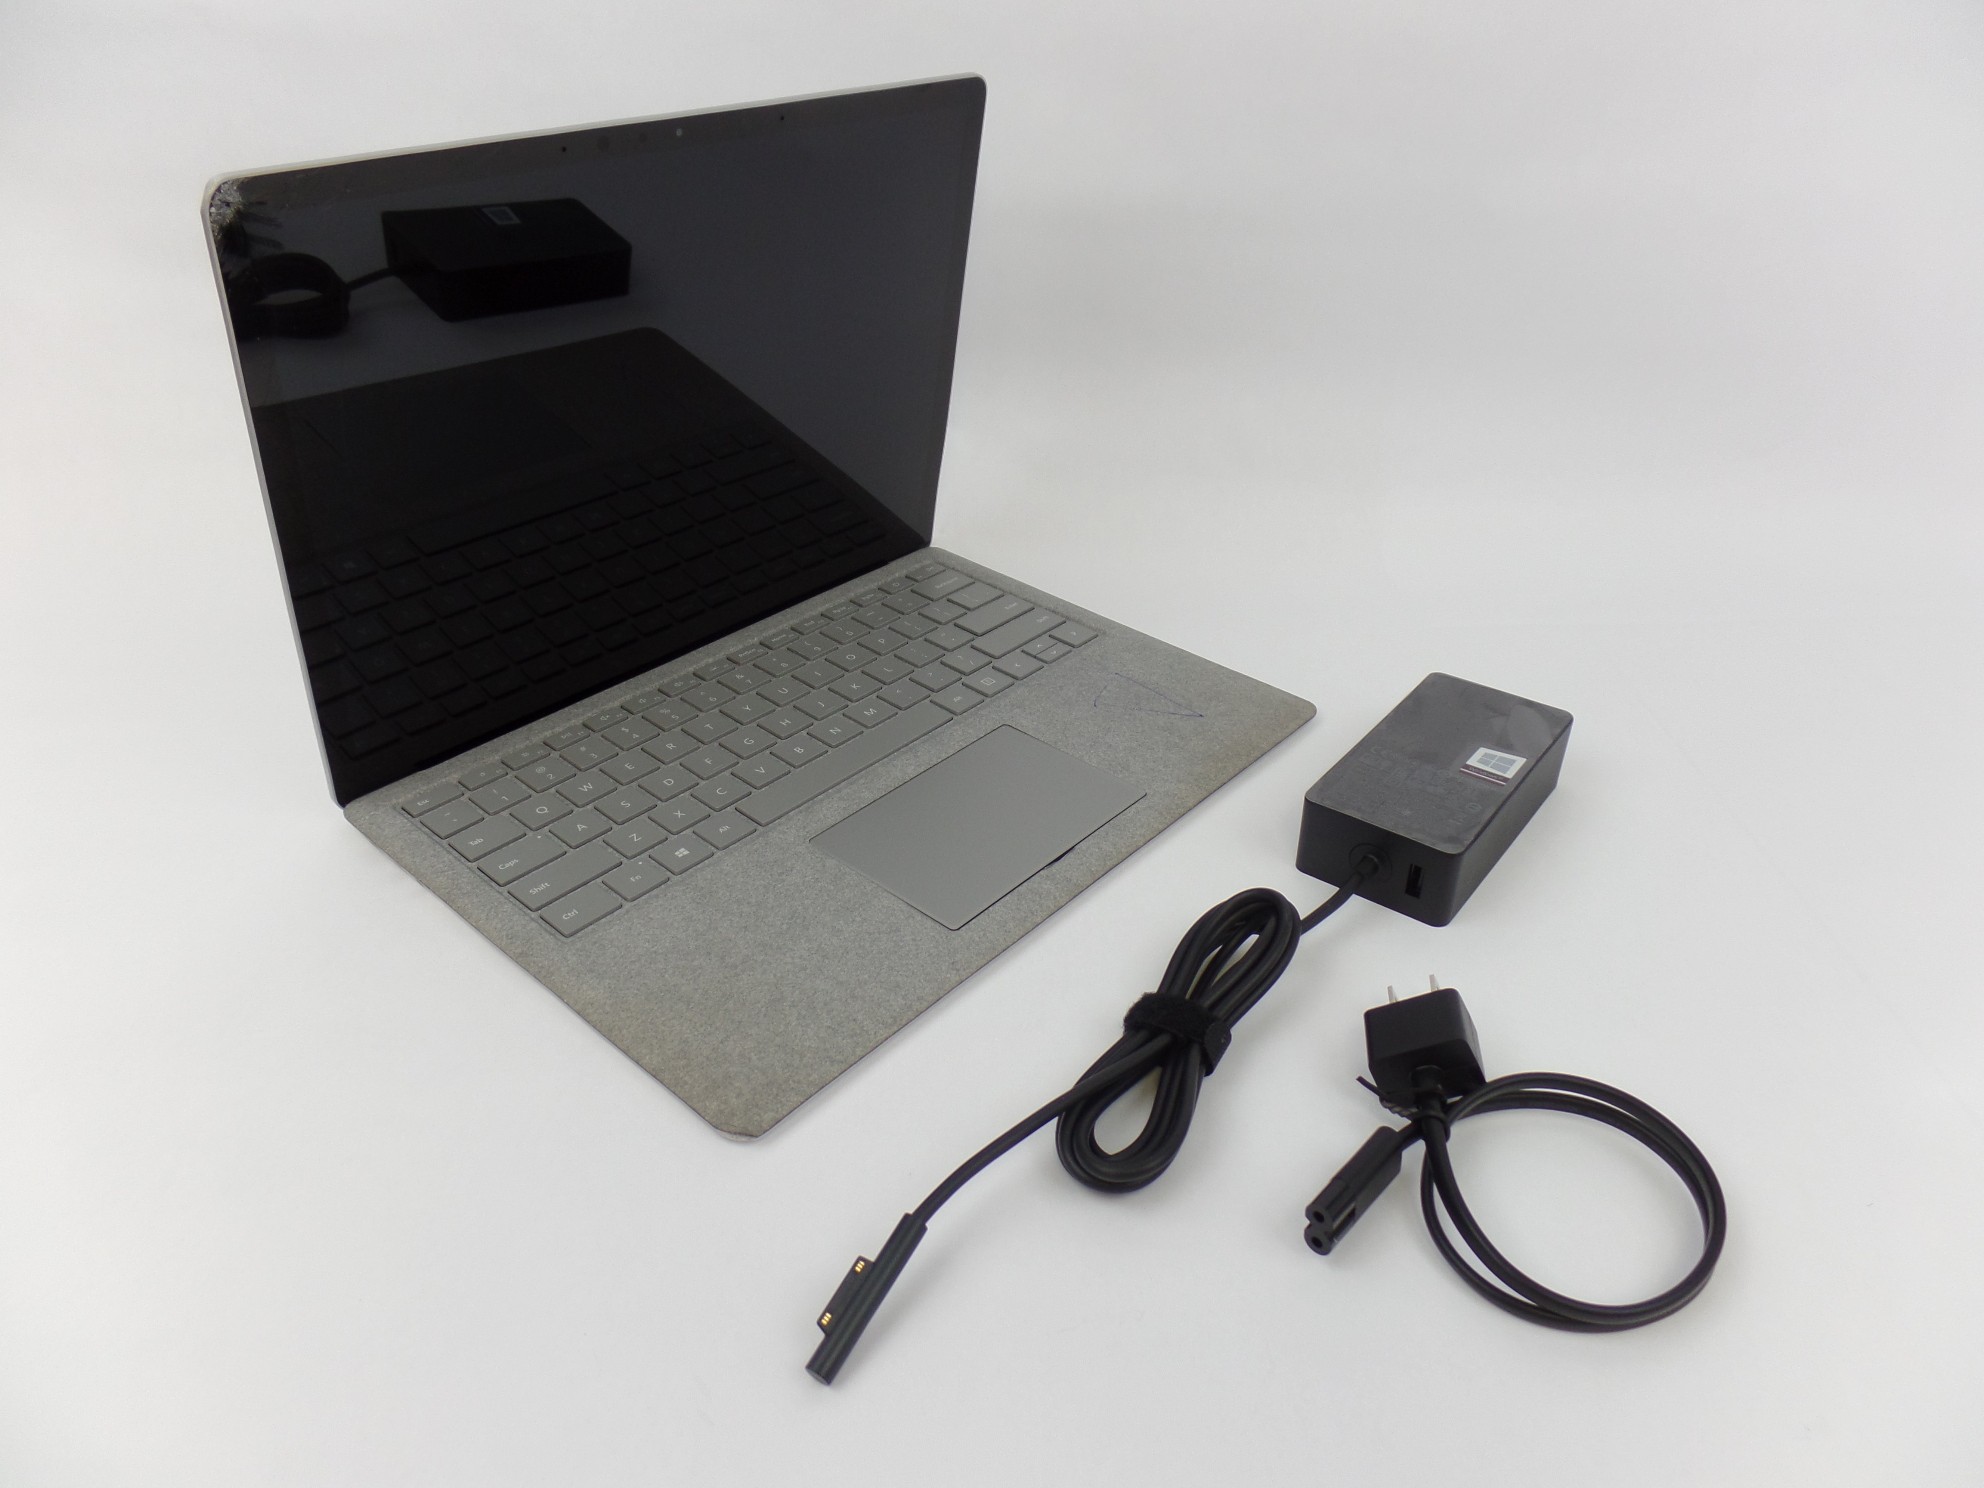 Read: Microsoft Surface Laptop 2 1769 13.5" i5-8250U 1.6GH 8GB 128GB W10H Grey